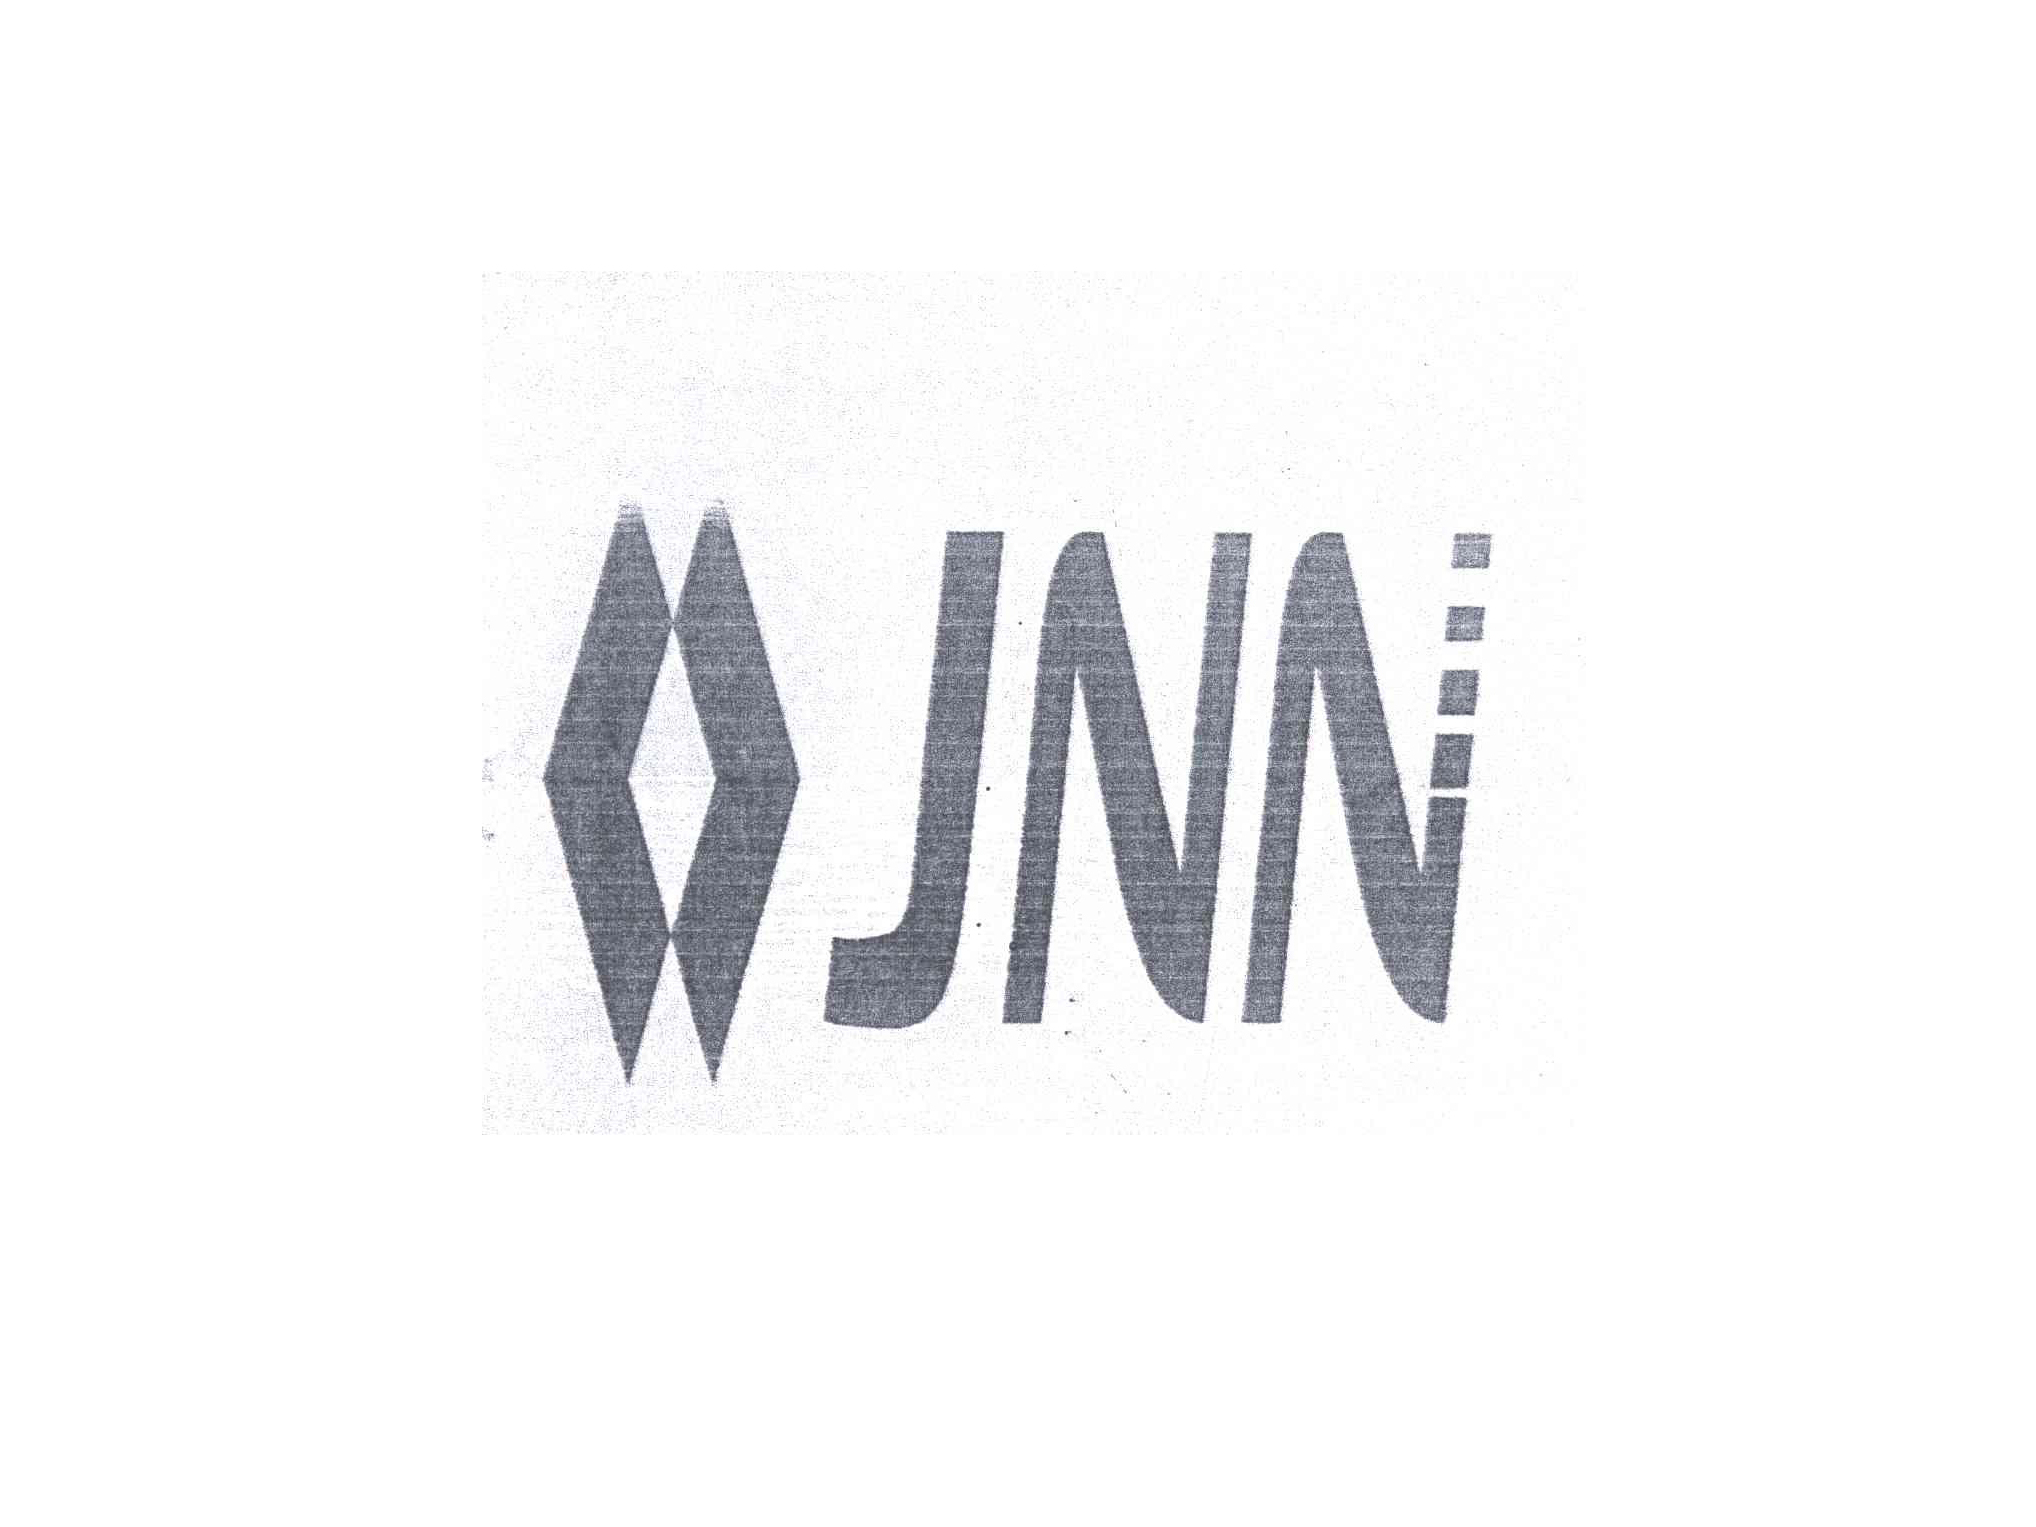 jnn